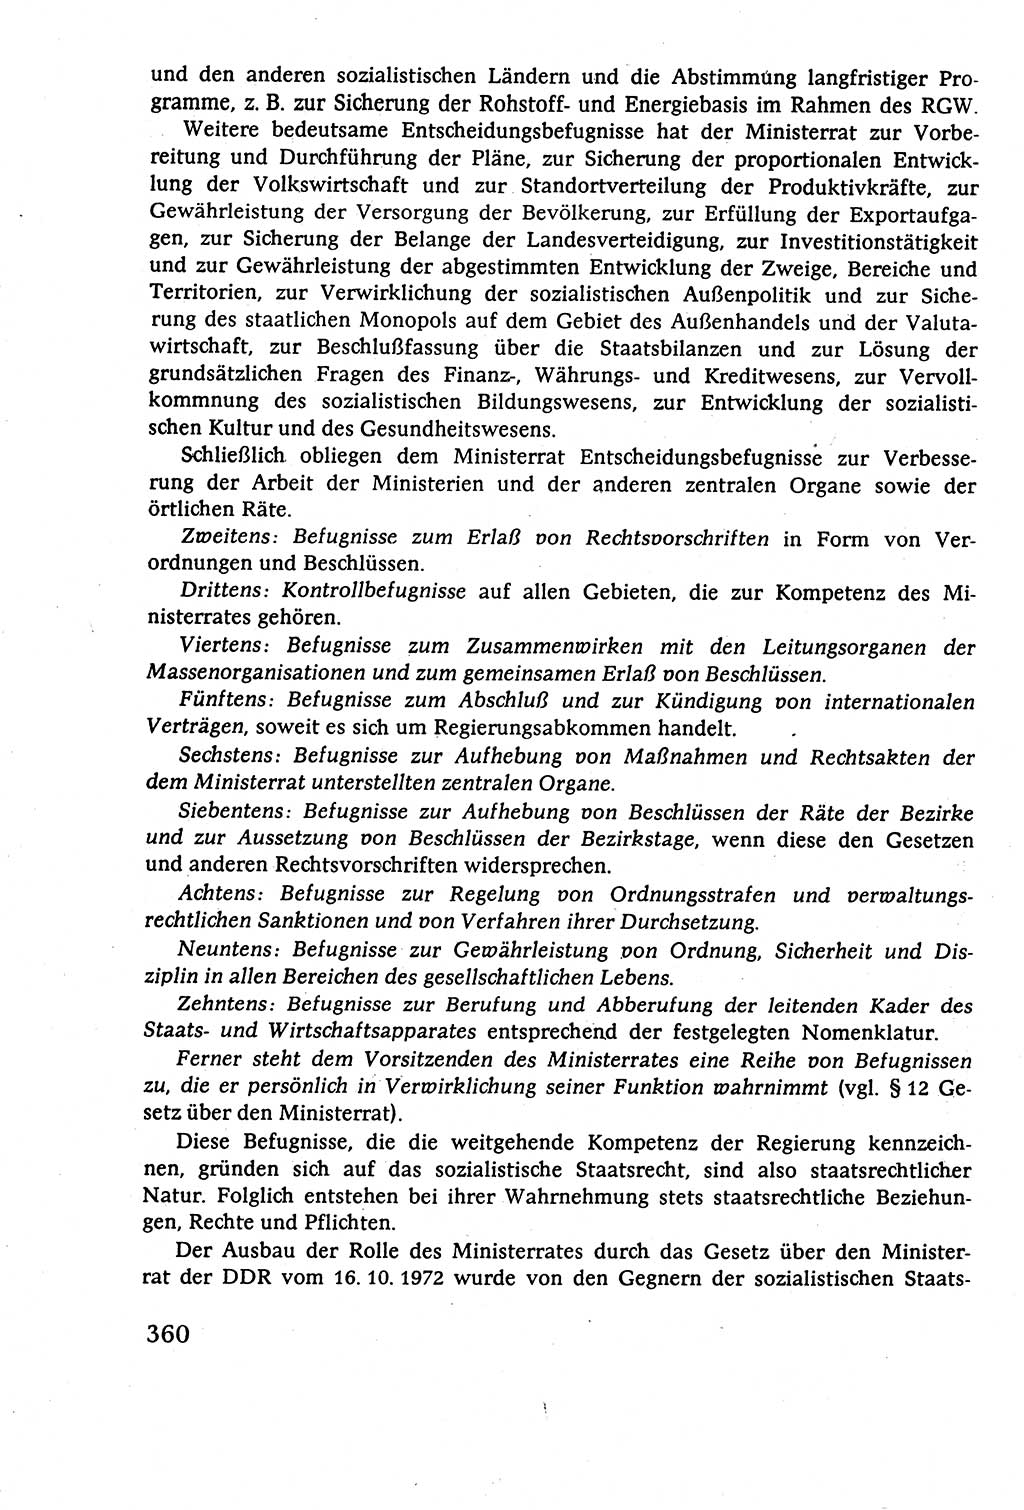 Staatsrecht der DDR (Deutsche Demokratische Republik), Lehrbuch 1977, Seite 360 (St.-R. DDR Lb. 1977, S. 360)